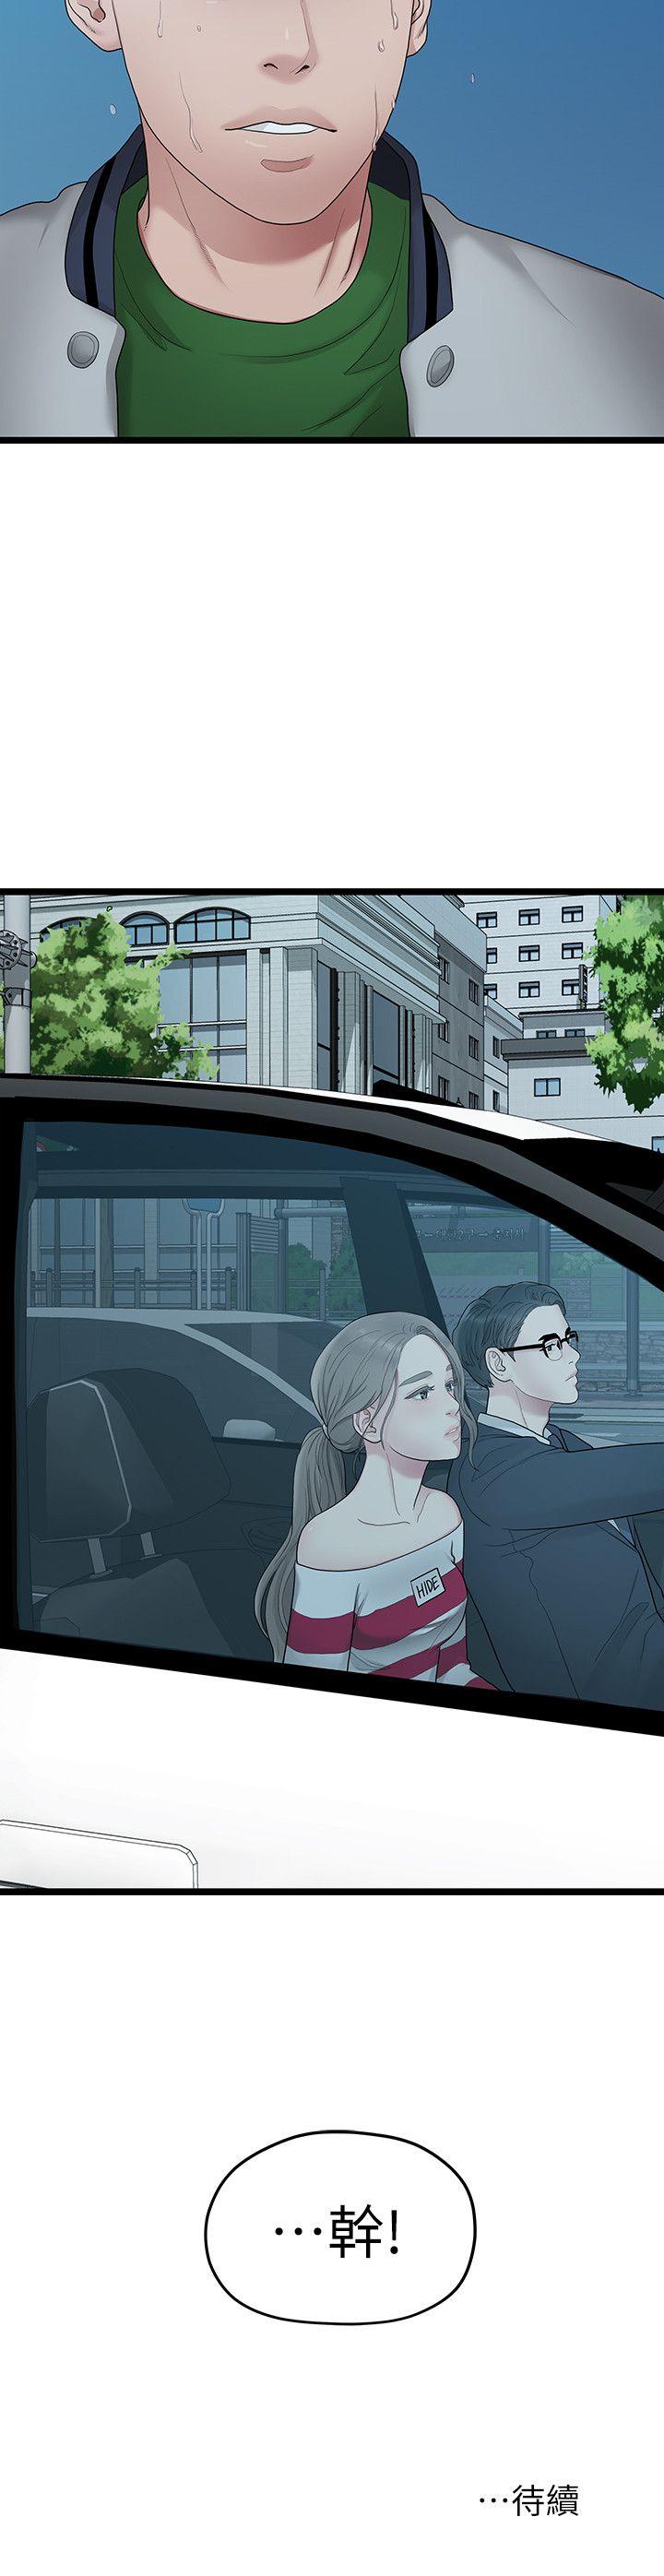 韩国污漫画 我們的非常關系 第33话-无法继续交往的理由 21